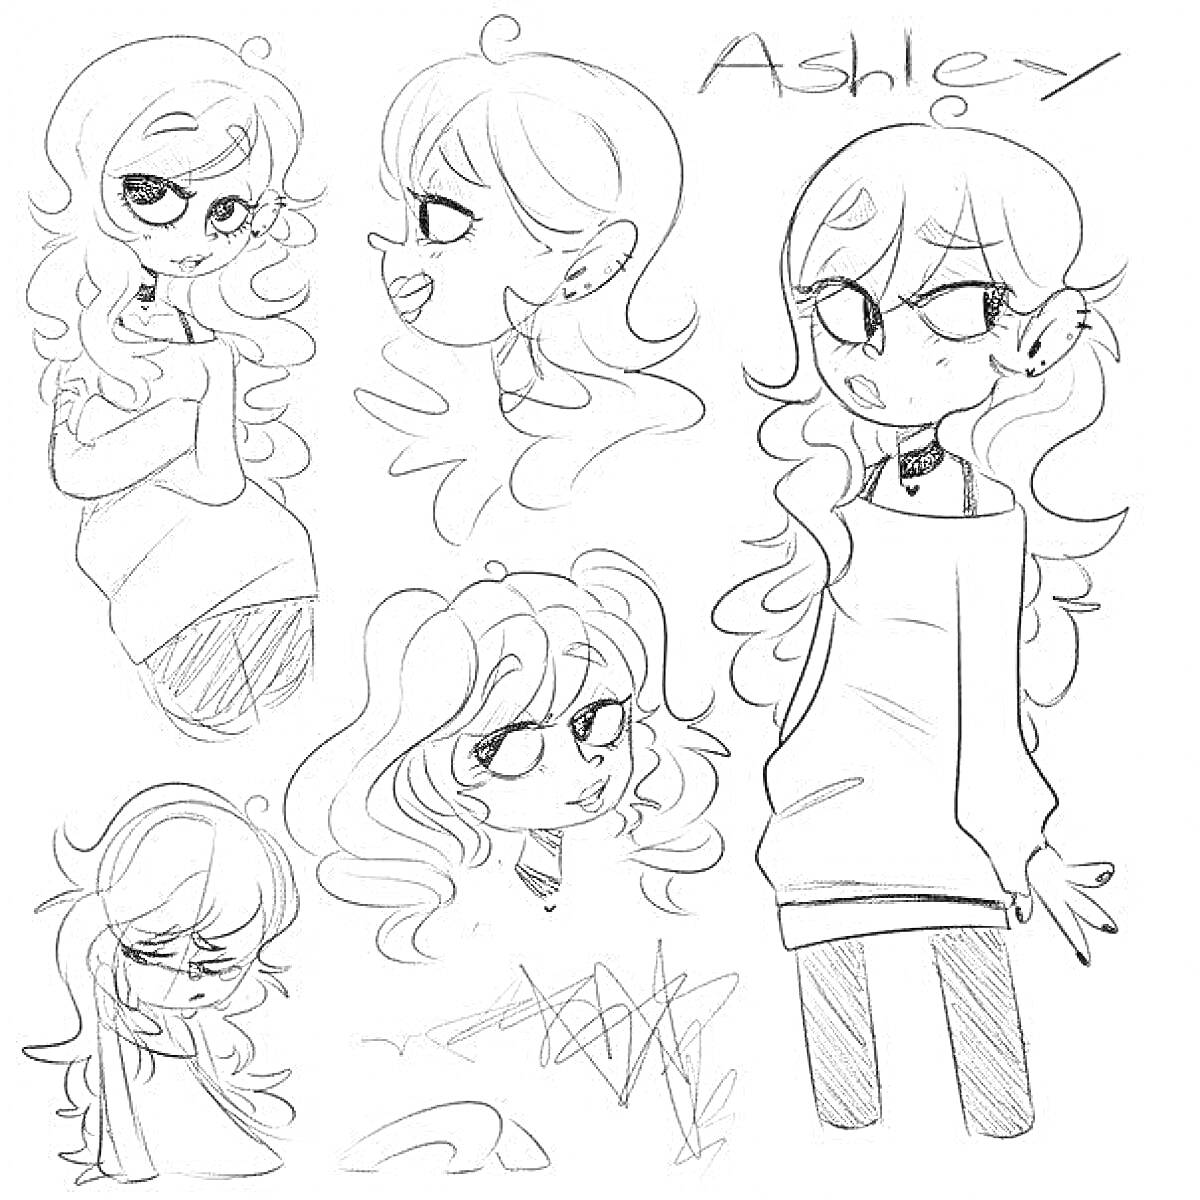 Раскраска Раскраска с несколькими изображениями героини по имени Ashley с разными позами, крупными глазами и длинными вьющимися волосами